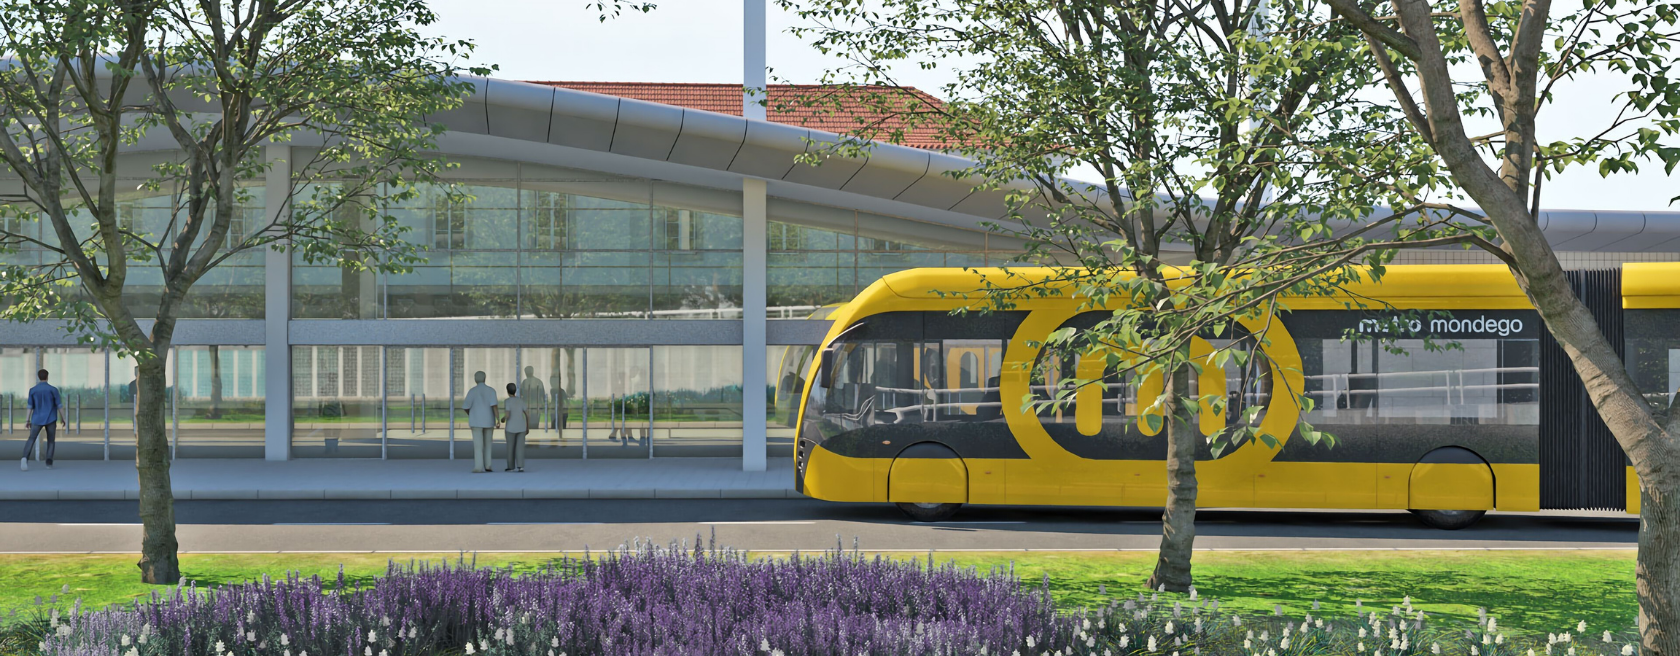 Grande Projeto - Sistema de Mobilidade do Mondego – Aplicação de um Sistema MetroBus